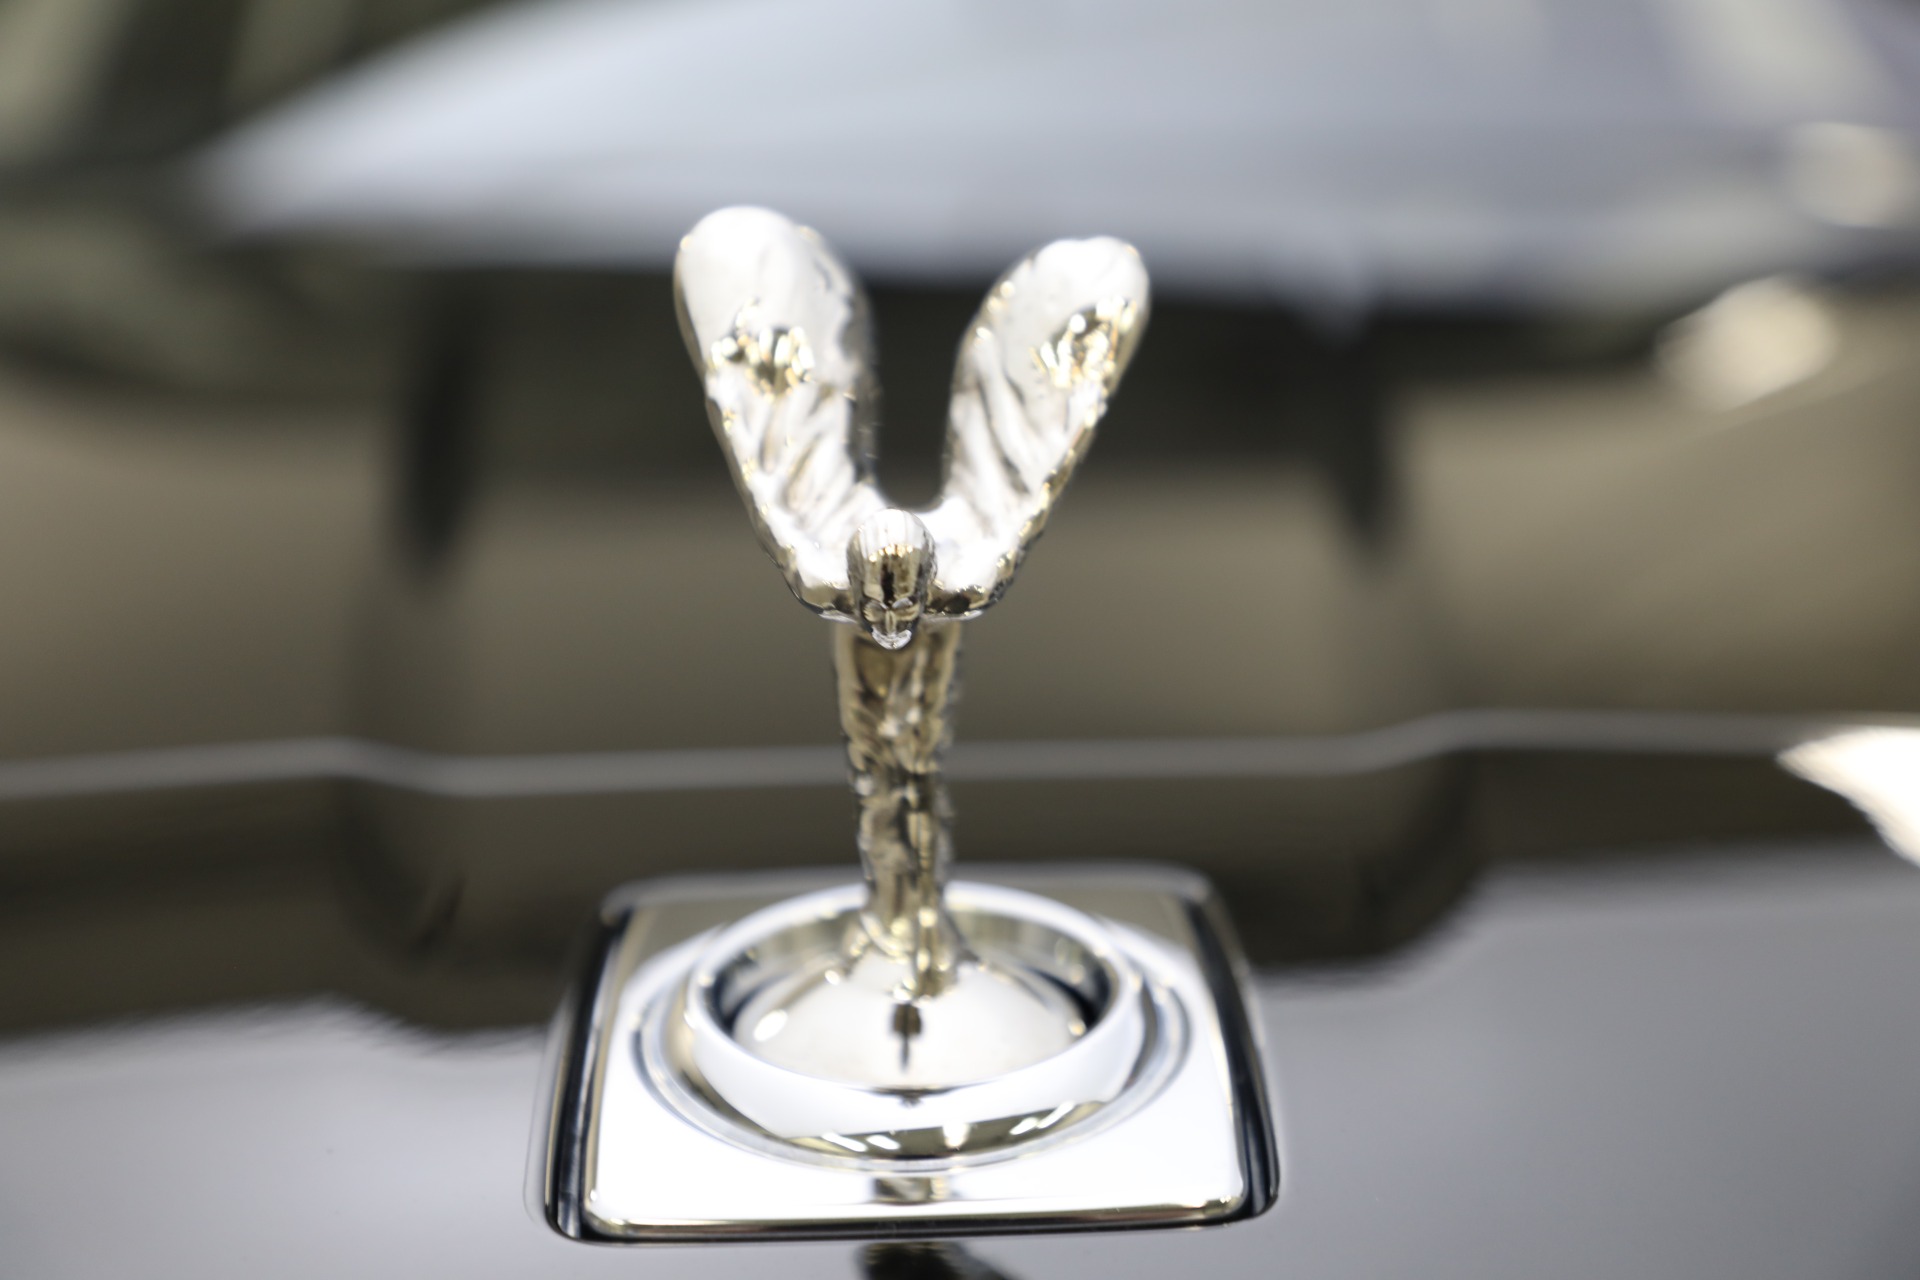 Used 2020 Rolls Royce Cullinan